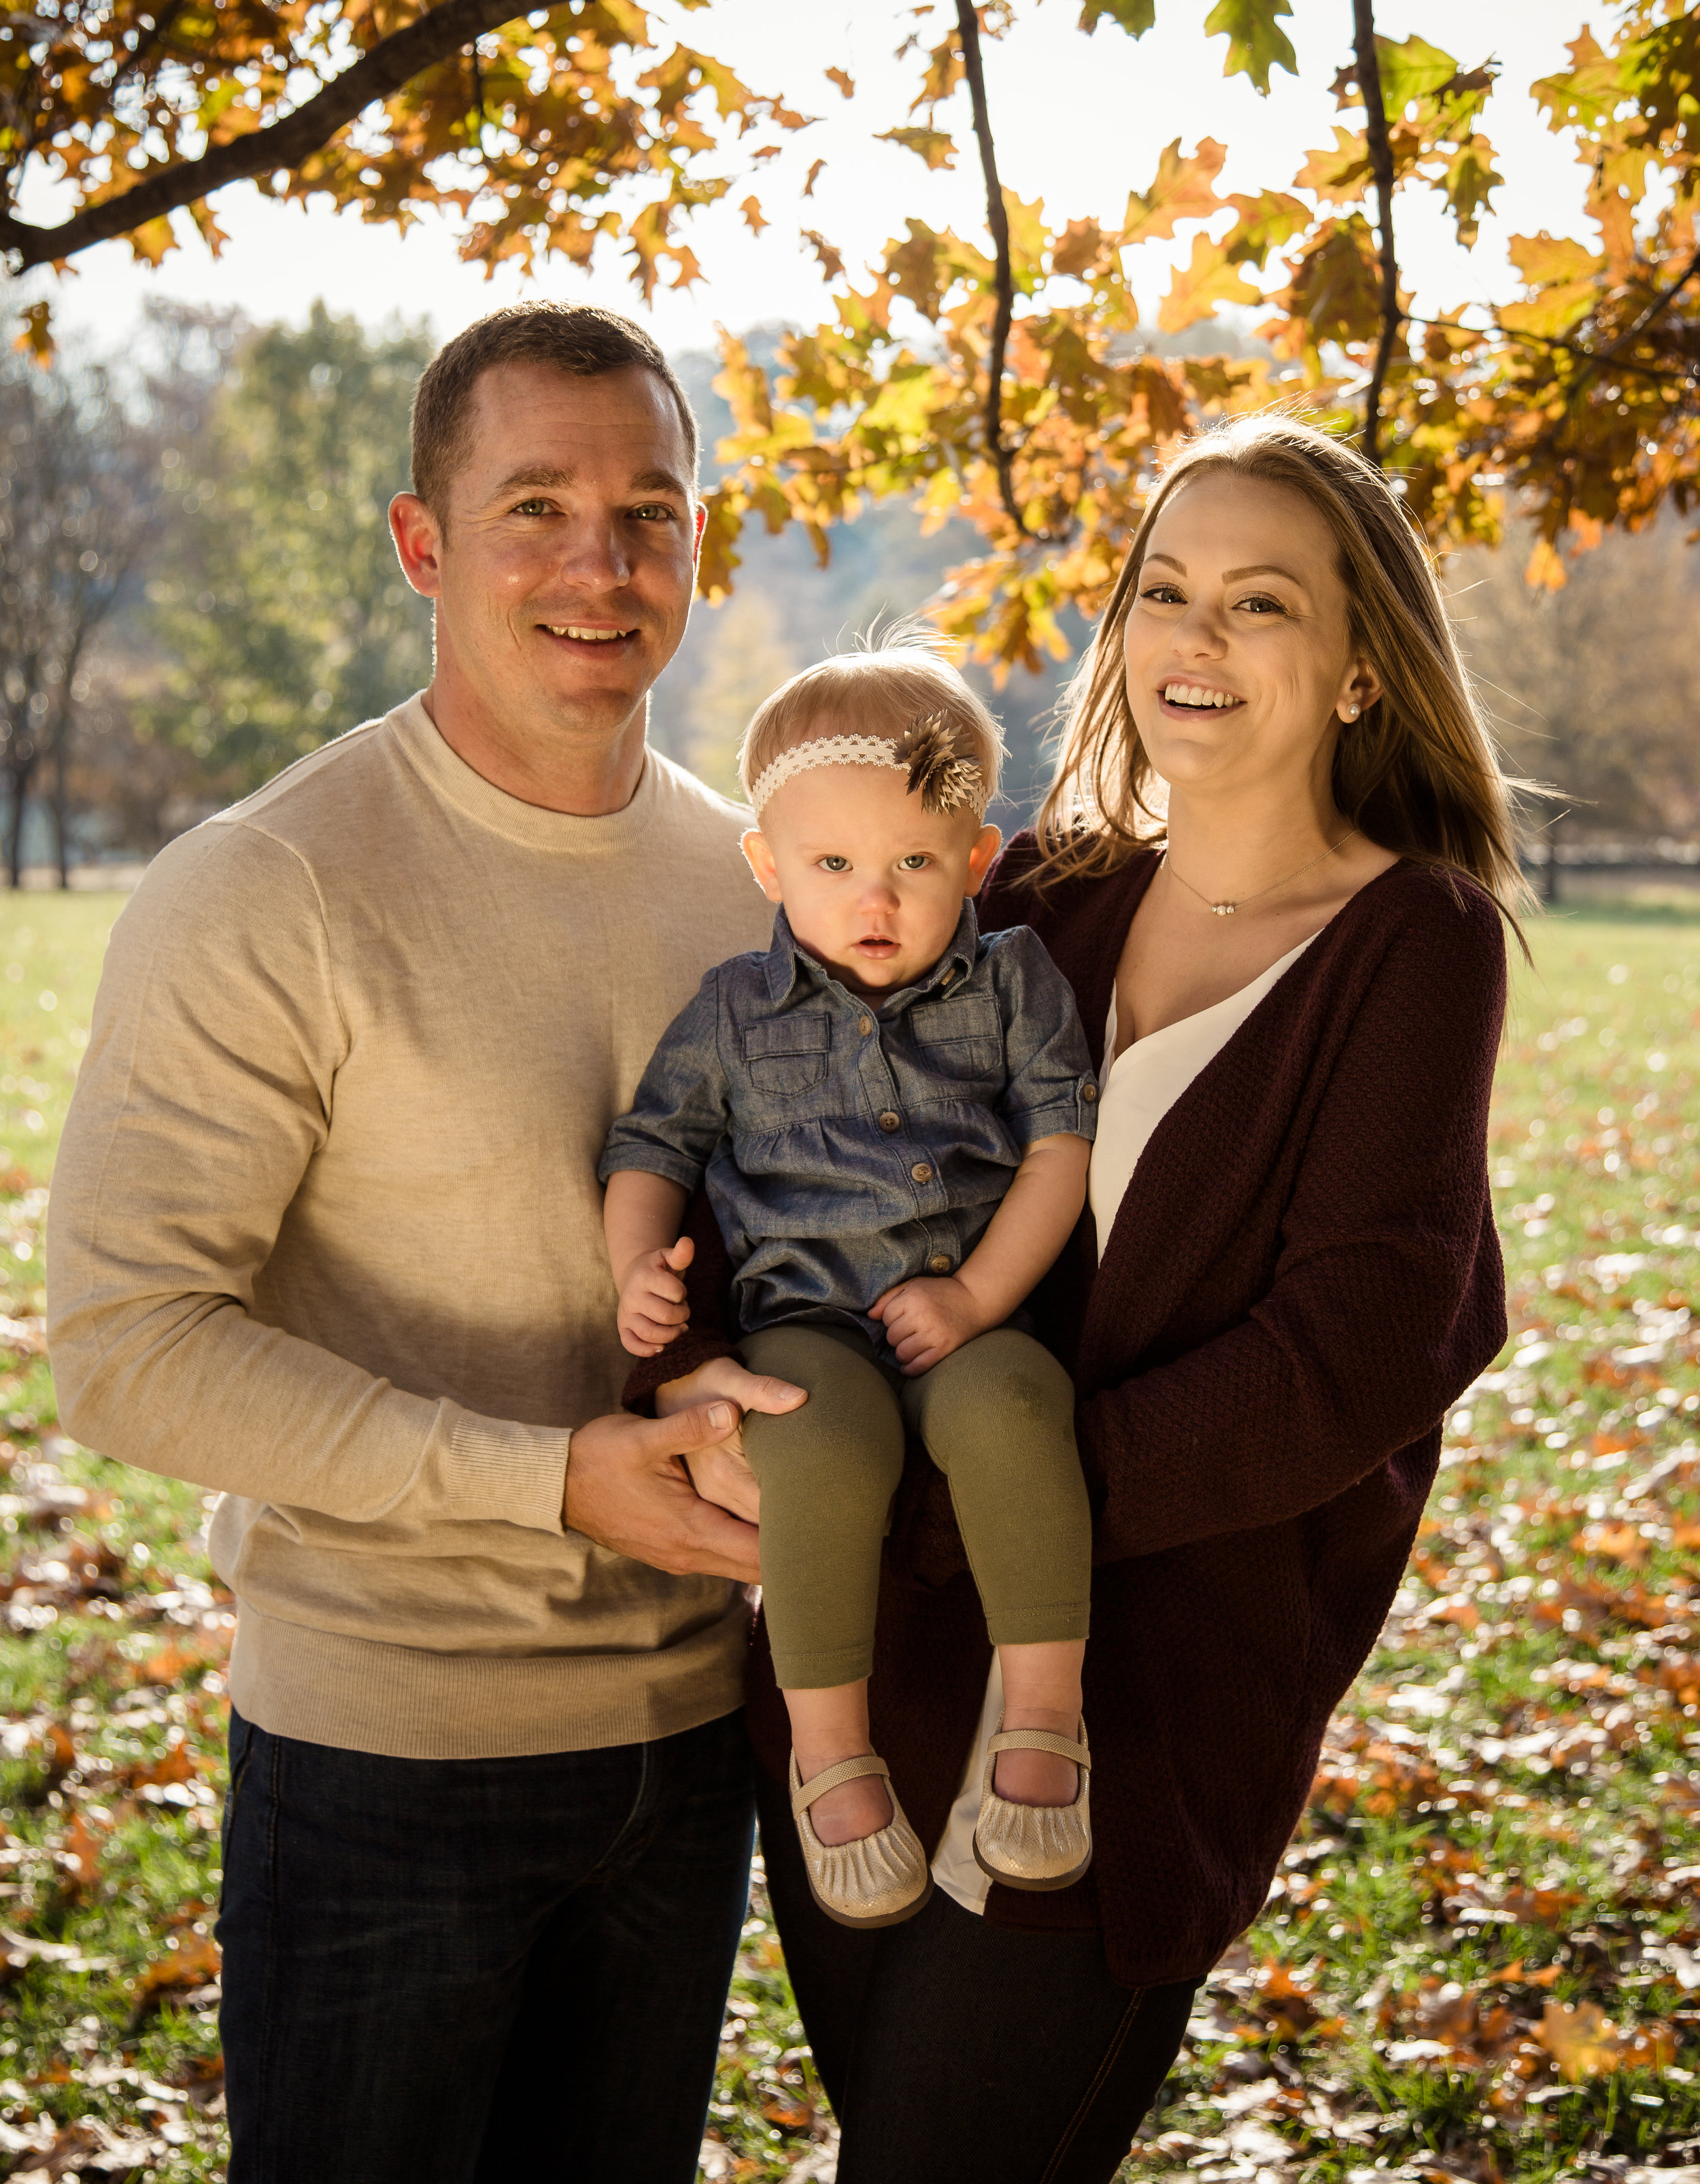 Bennett-Burrell Family Photos 2018 (4 of 39).jpg